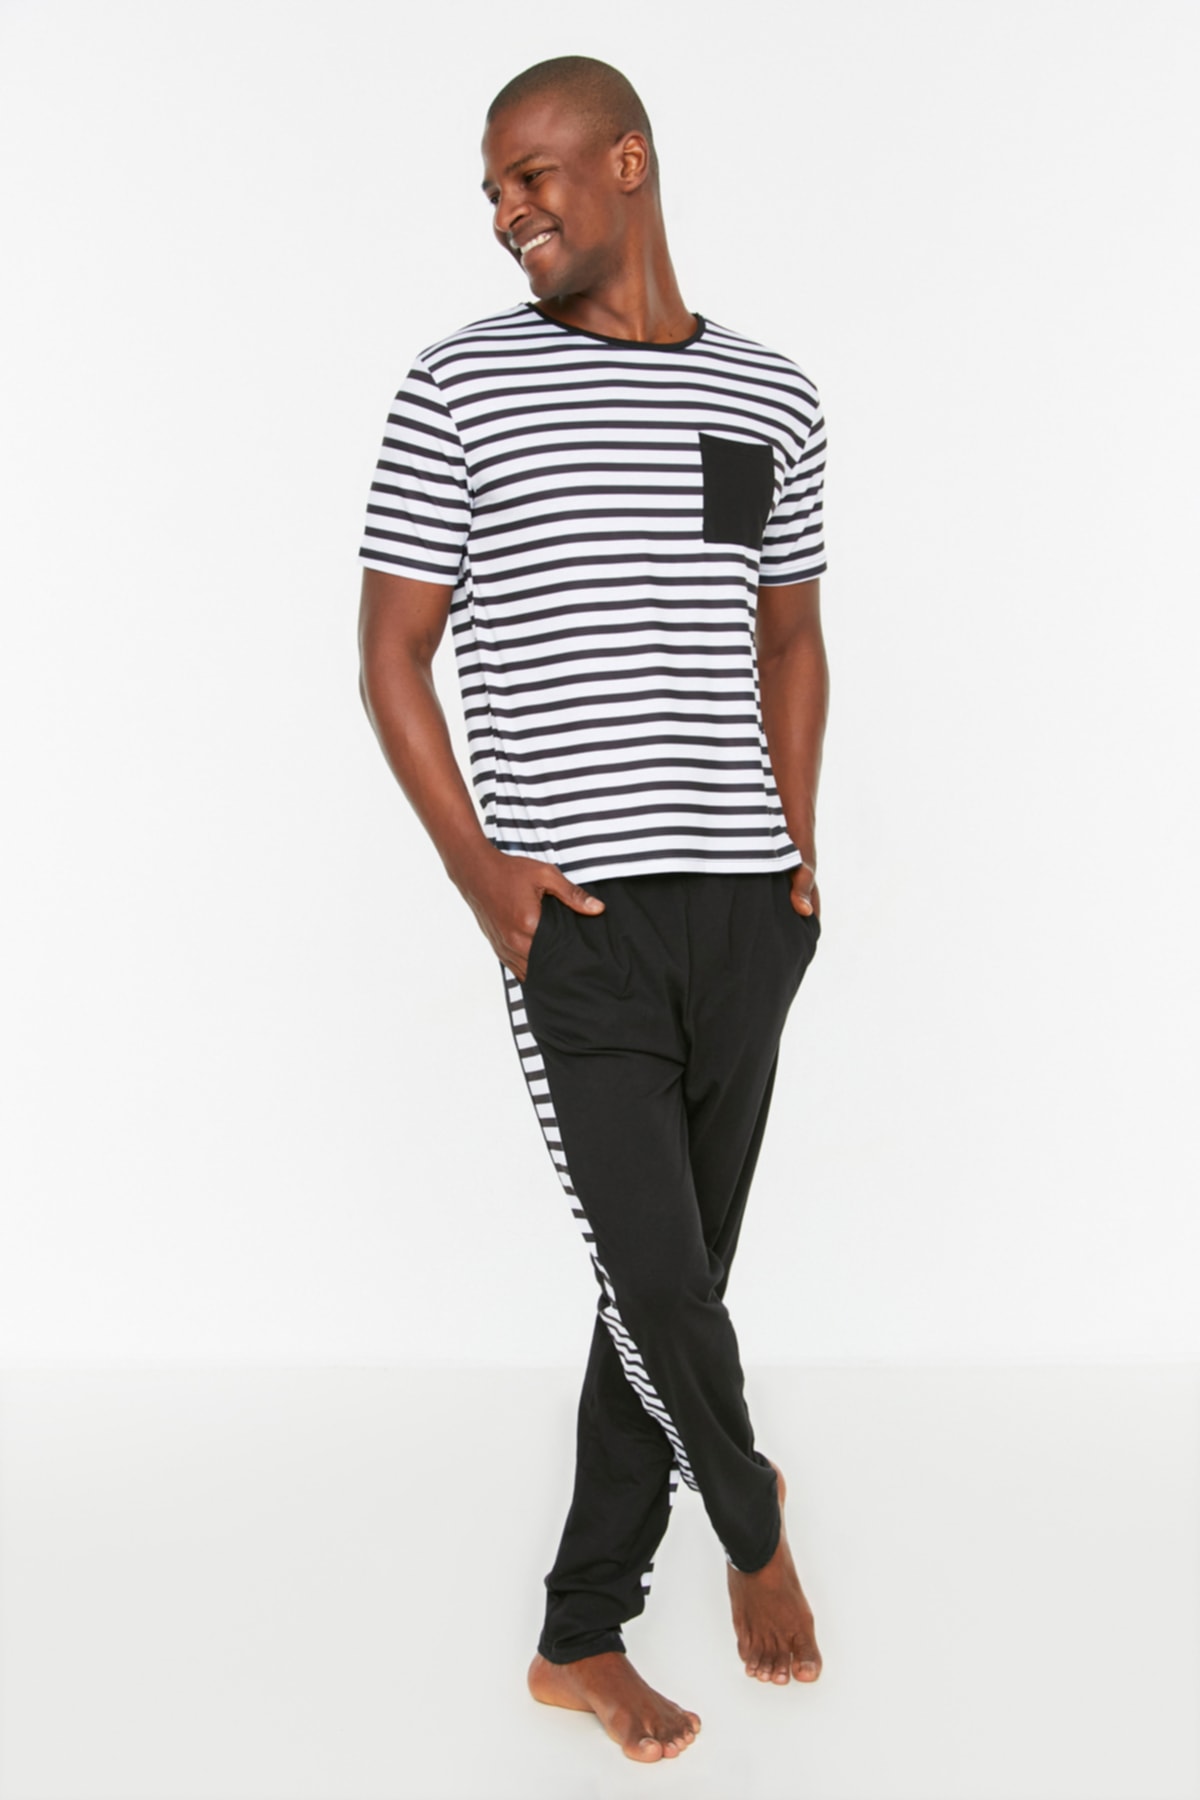 Trendyol Black Men's Regular Fit Striped Pajamas Set